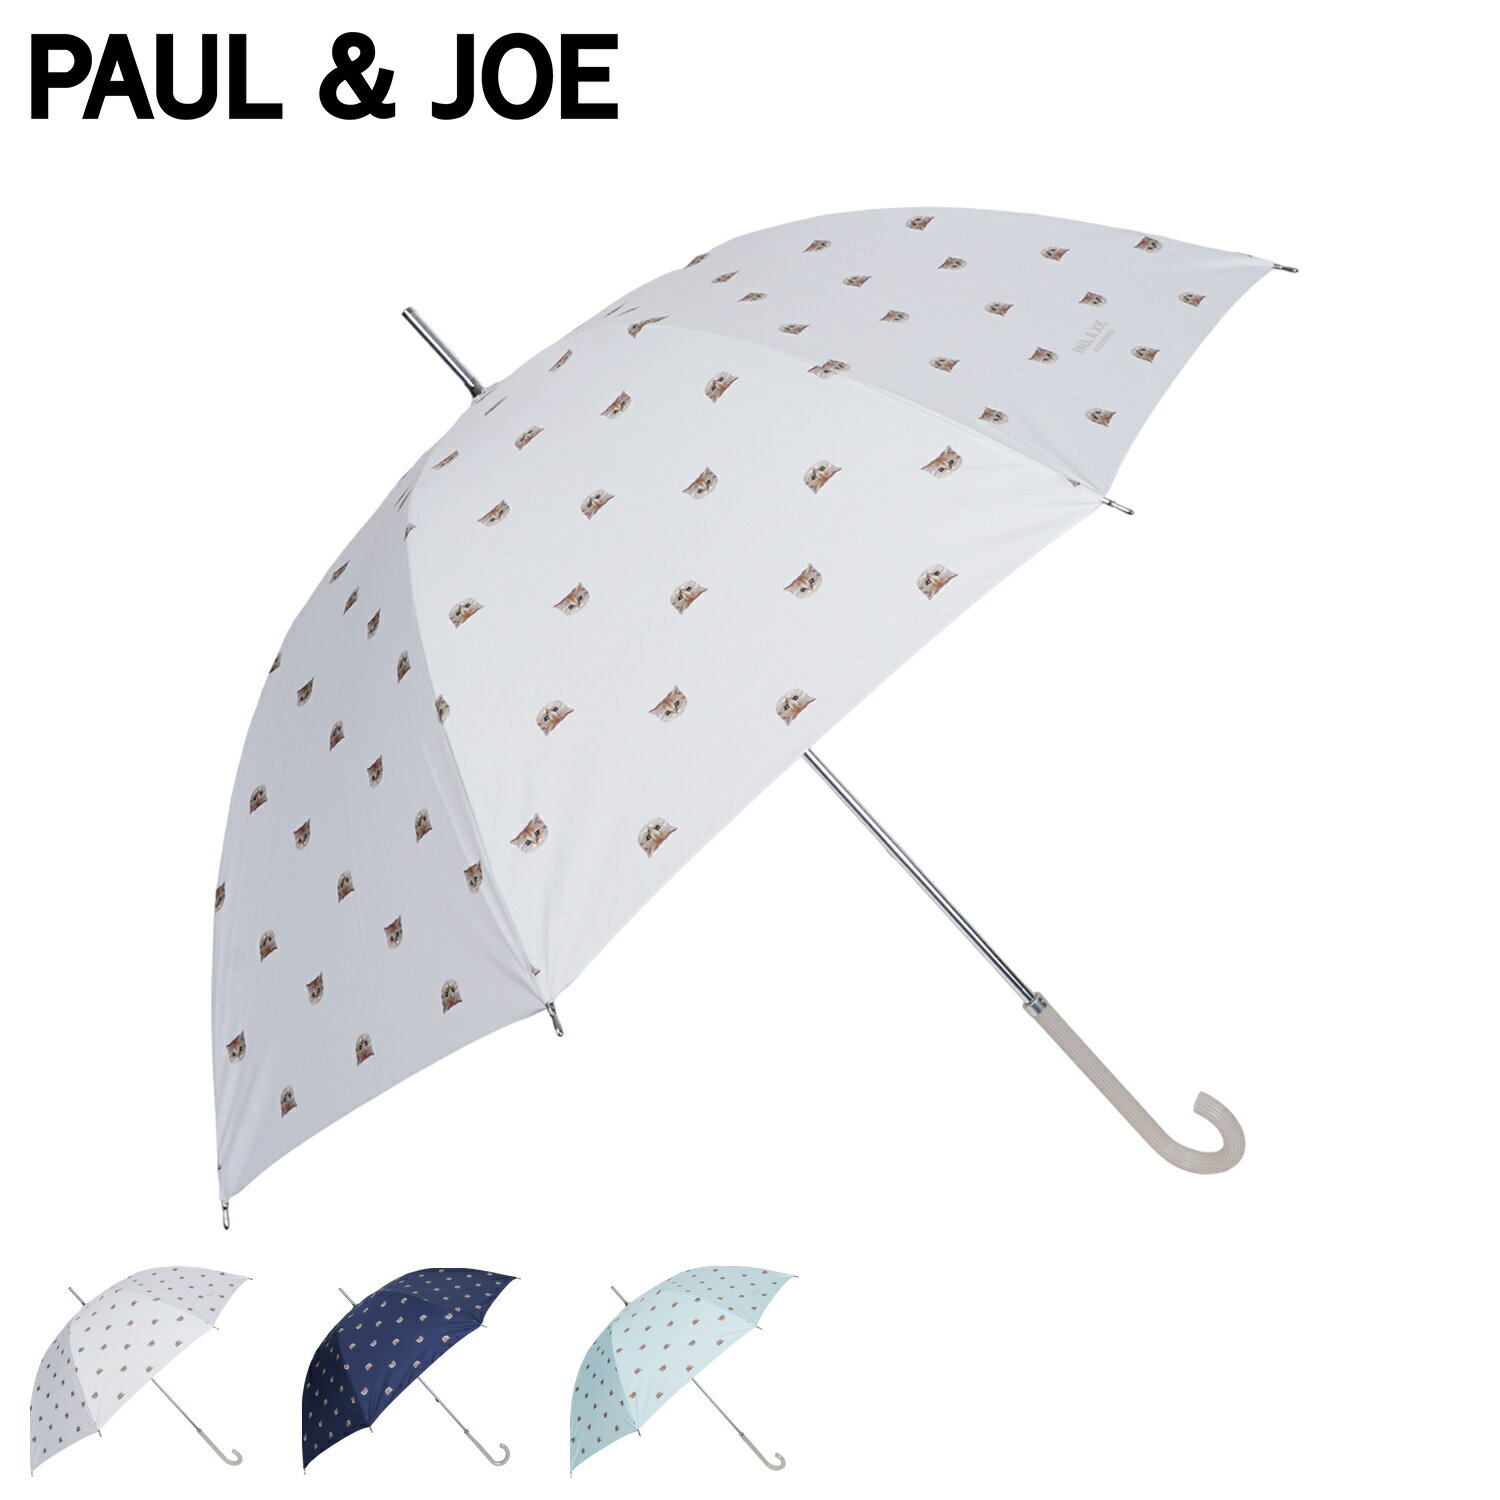 ポールアンドジョー PAUL & JOE 長傘 雨傘 日傘 晴雨兼用 レディース 60cm 猫 UVカット 加工 軽量 紫外線対策 ヌネット ホワイト ネイビー ブルー 白 11142-00 母の日